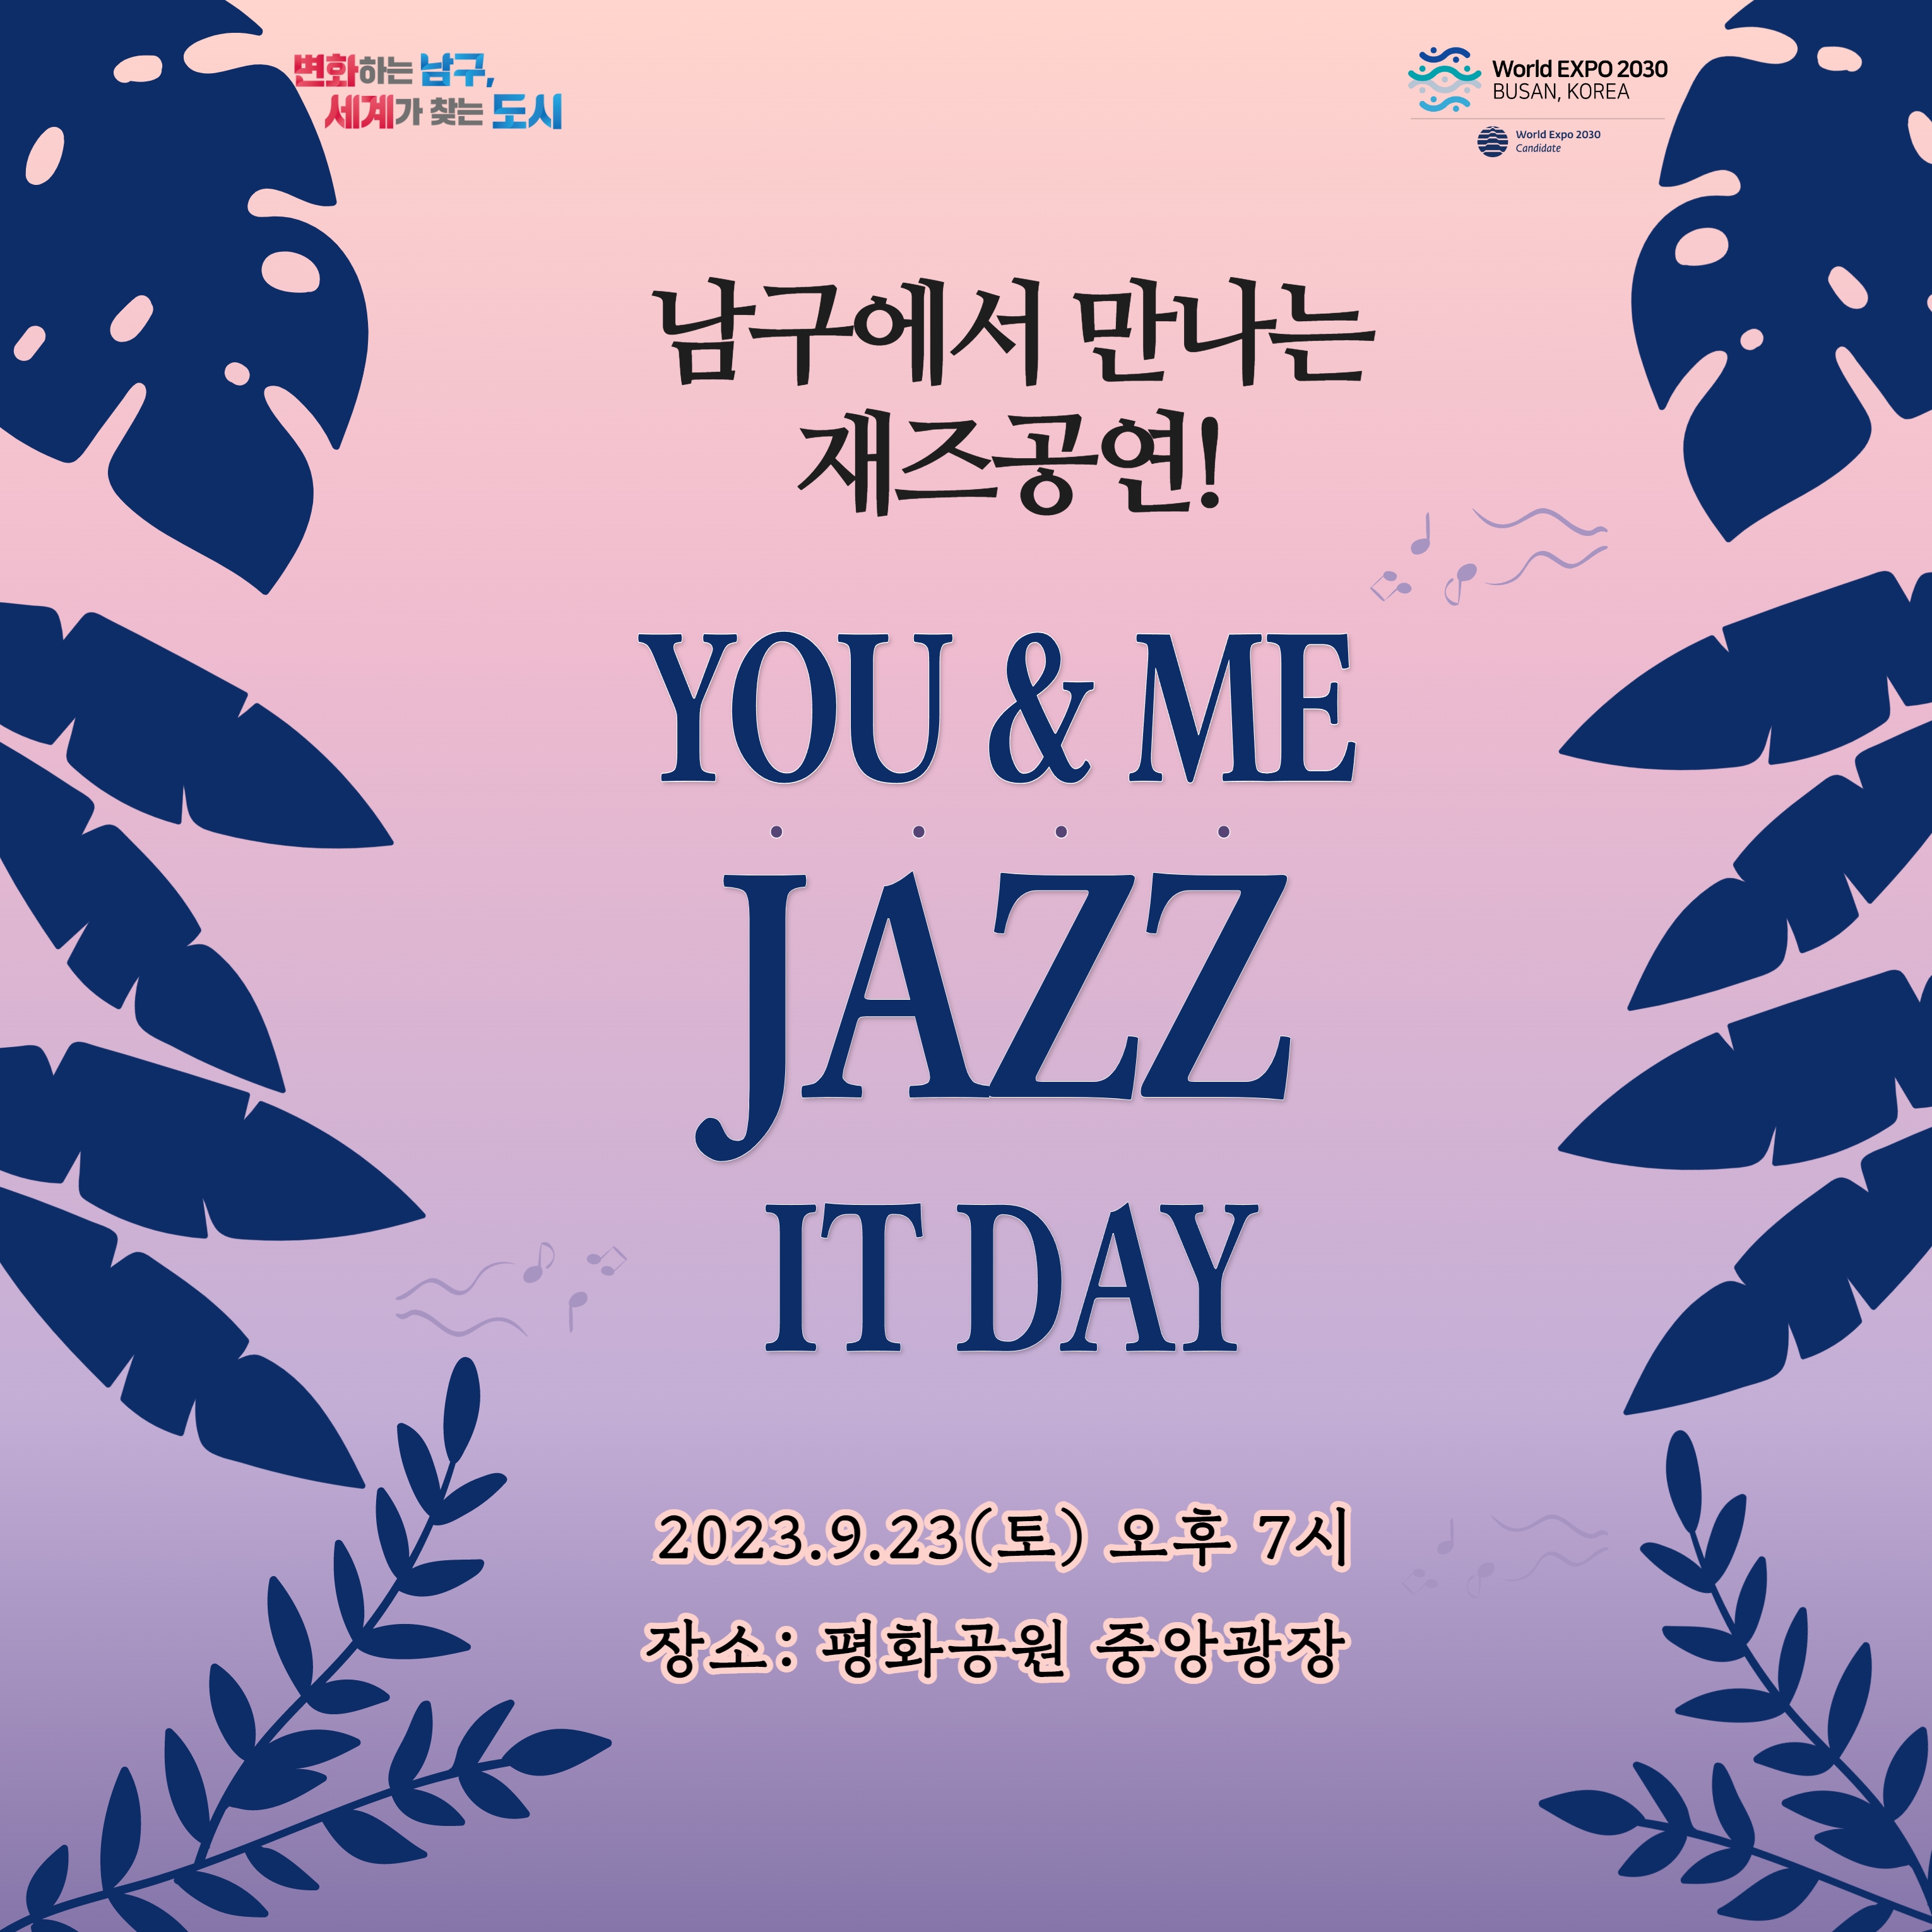 2023 남구 문화가 있는 날 You&Me Jazz It Day 행사